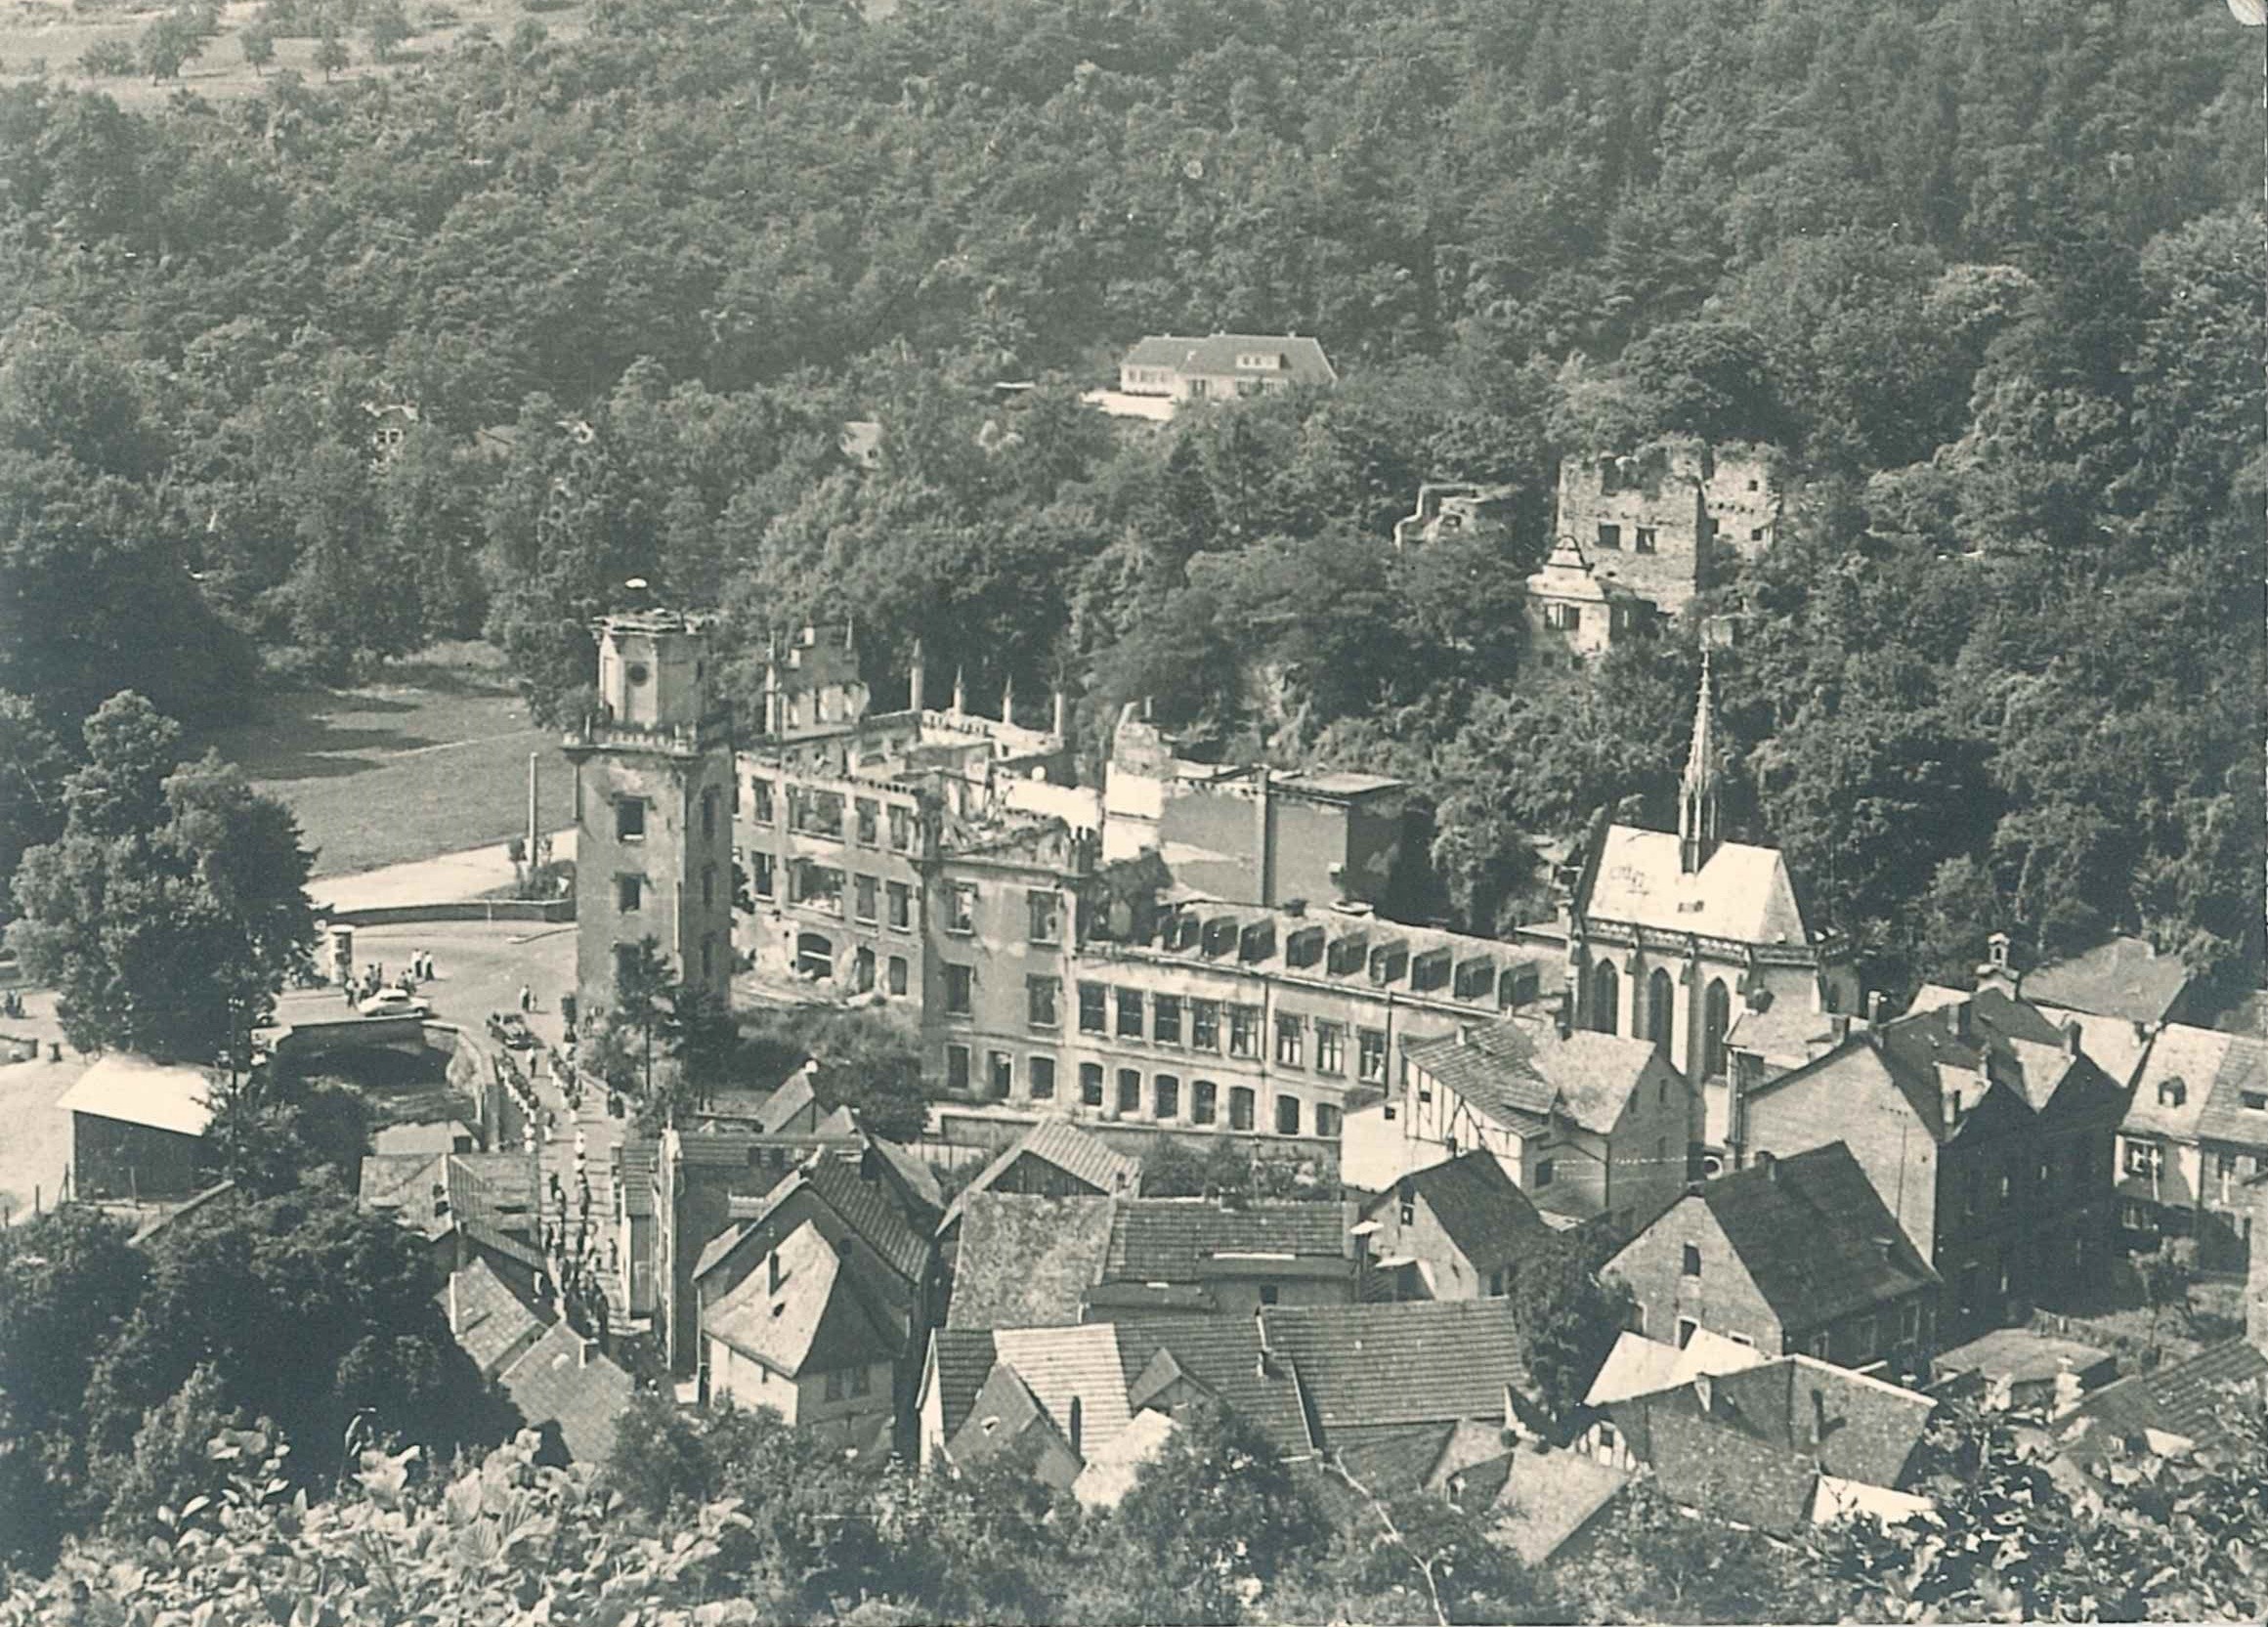 Luftaufnahme der Ruine von Schloß Sayn, 1955 (REM CC BY-NC-SA)